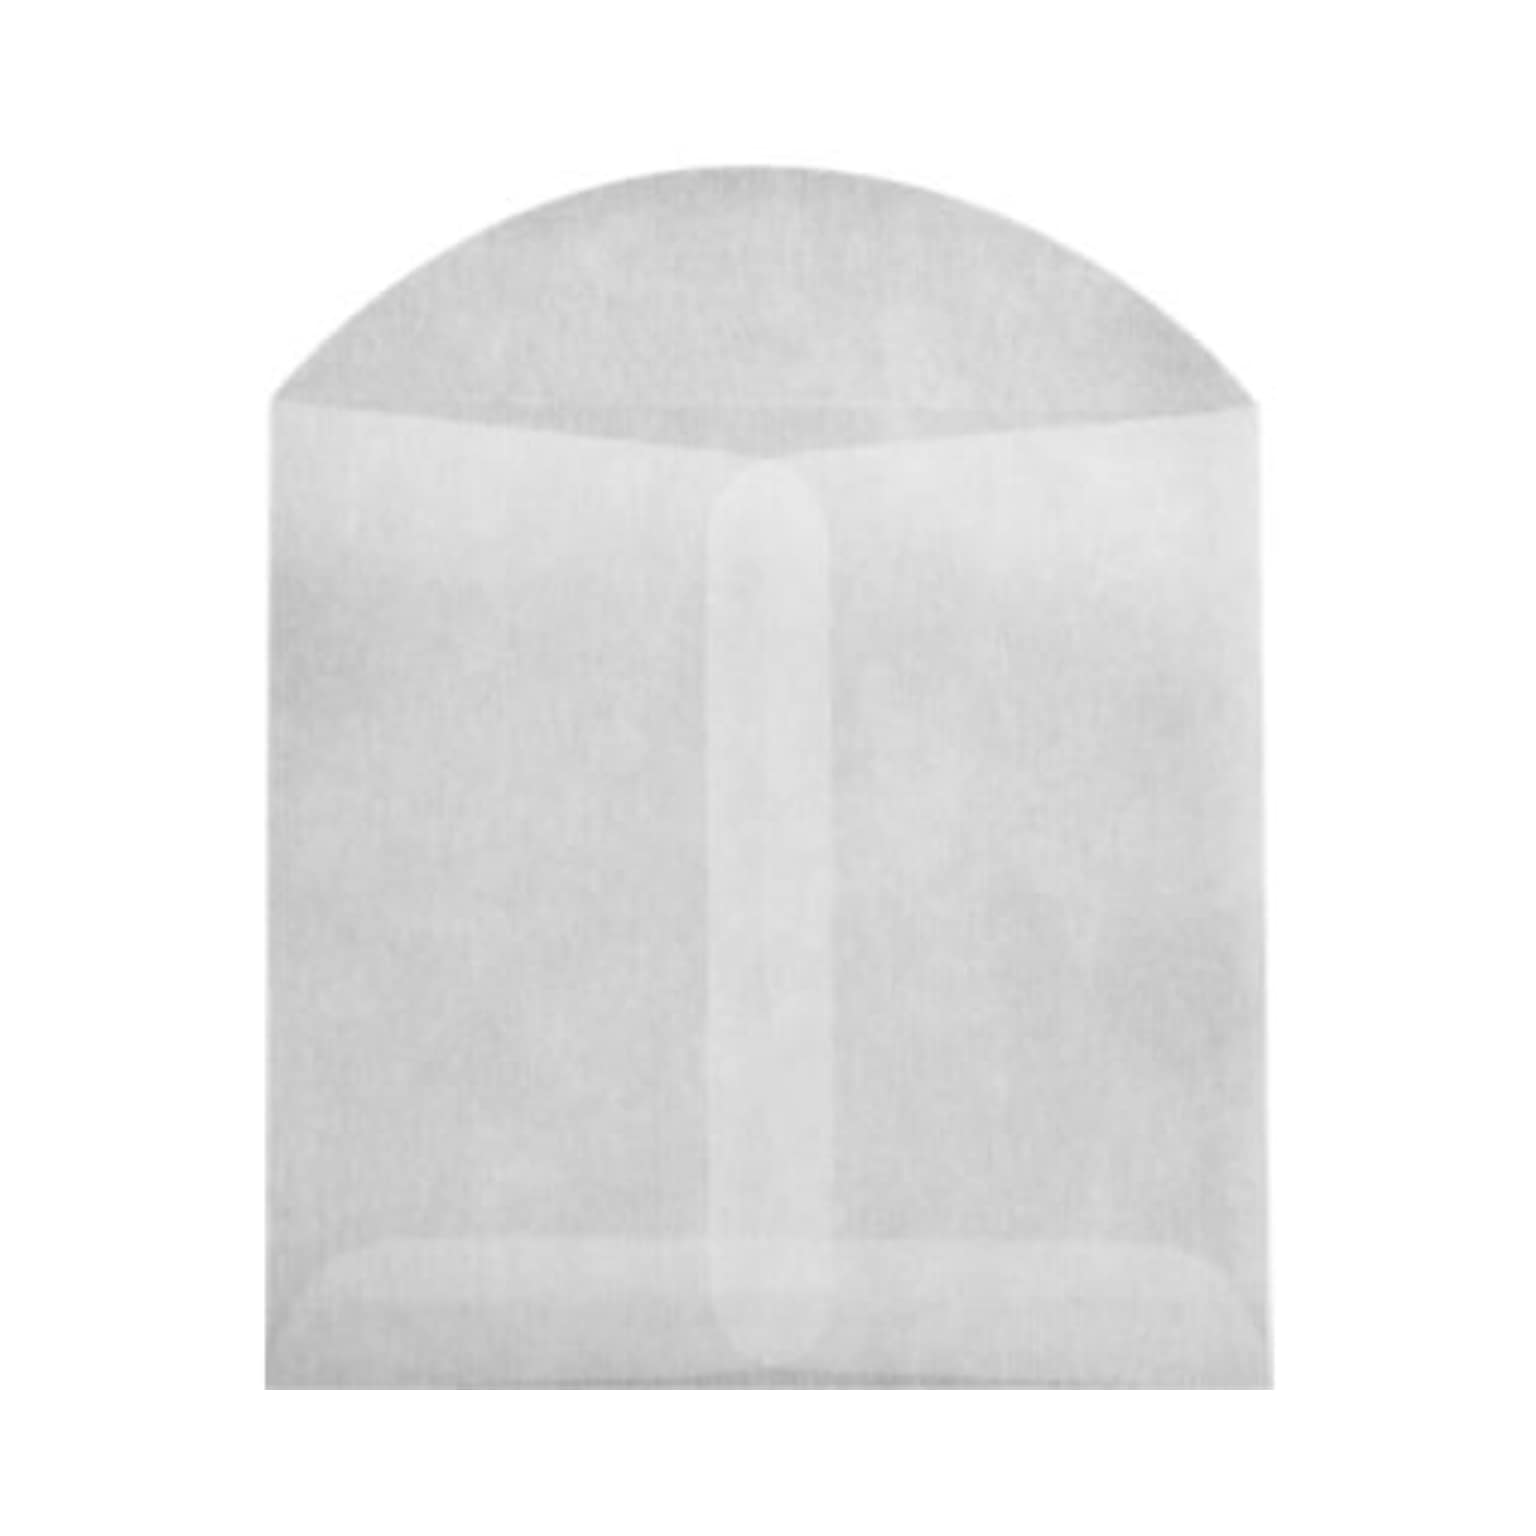 JAM PAPER Open End Envelopes, 4 x 4, Glassine, 100/Pack (GLASS-27-100)